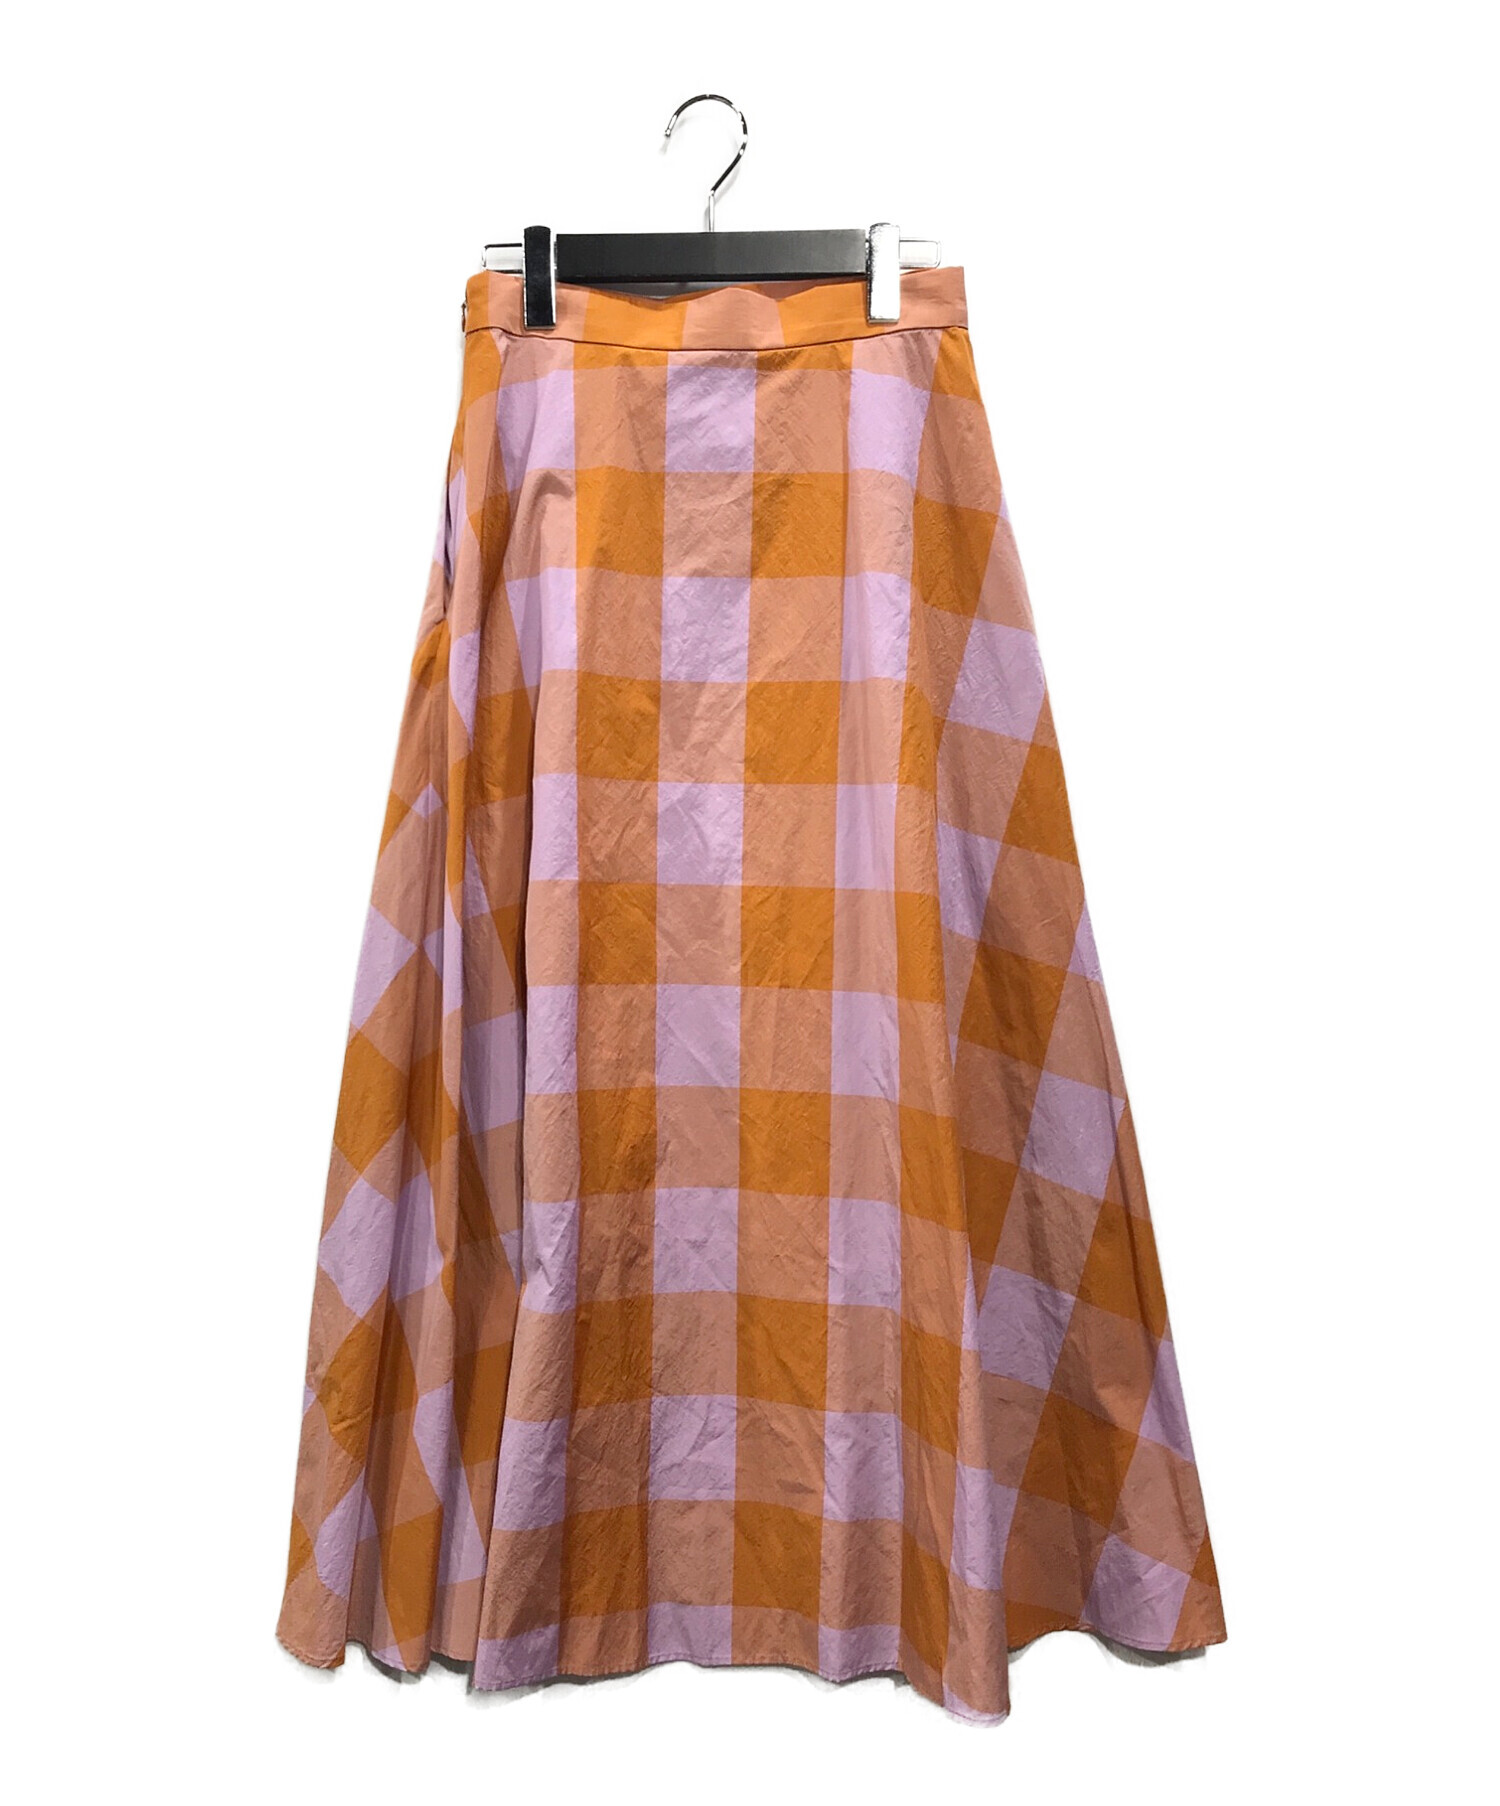 UNITED ARROWS TOKYO (ユナイテッドアローズトウキョウ) FABRICA フレアスカート オレンジ×パープル サイズ:36